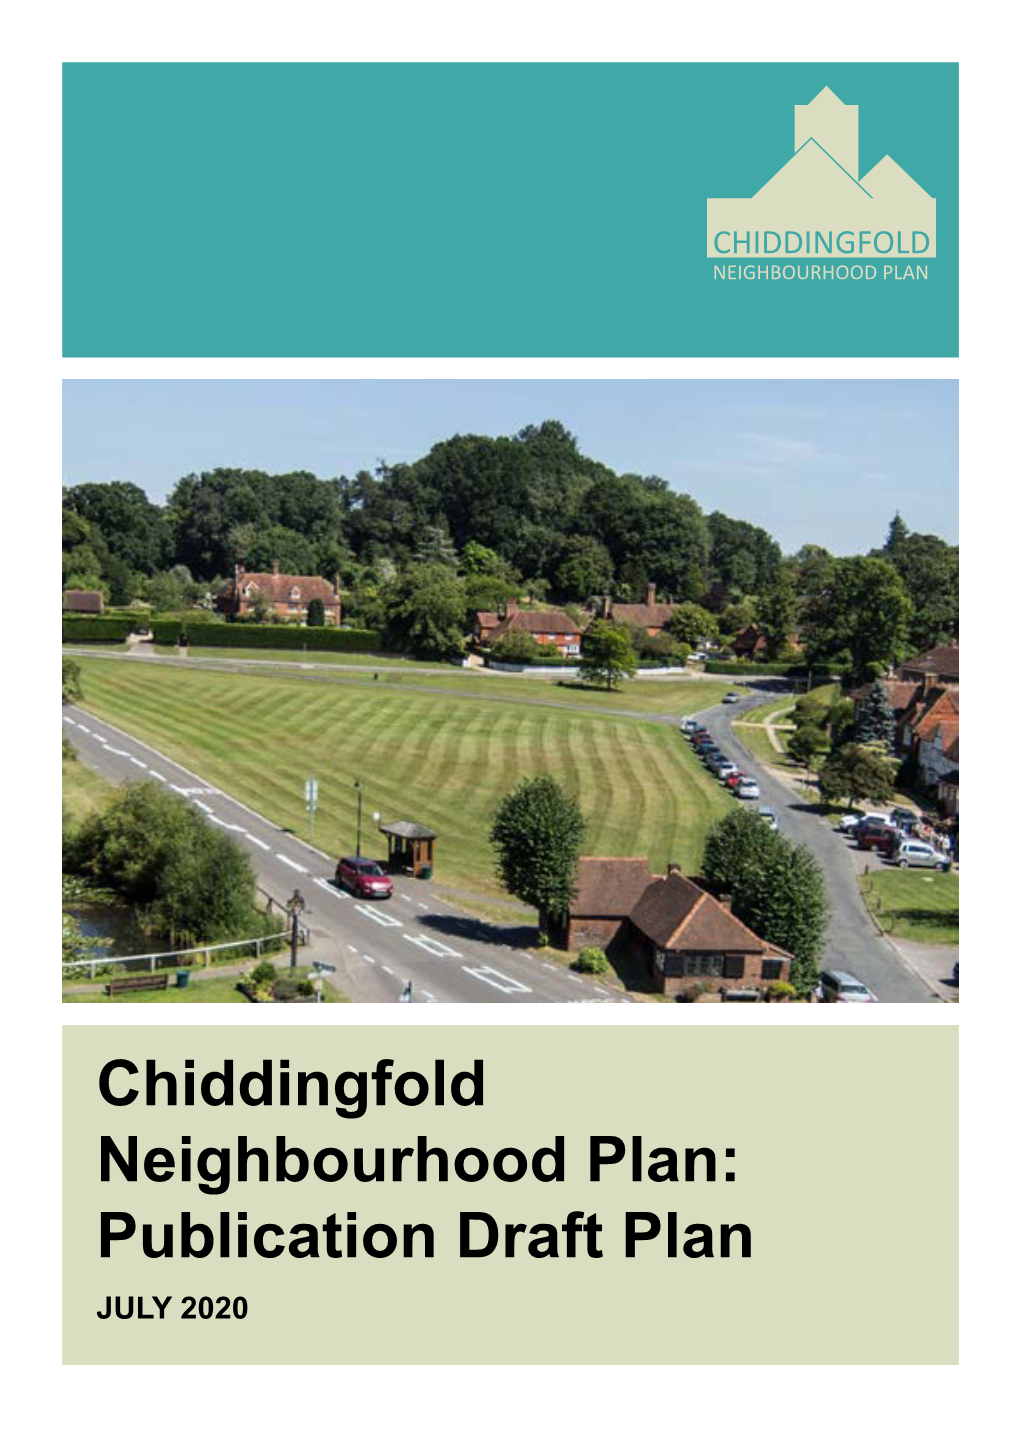 Chiddingfold Neighbourhood Plan